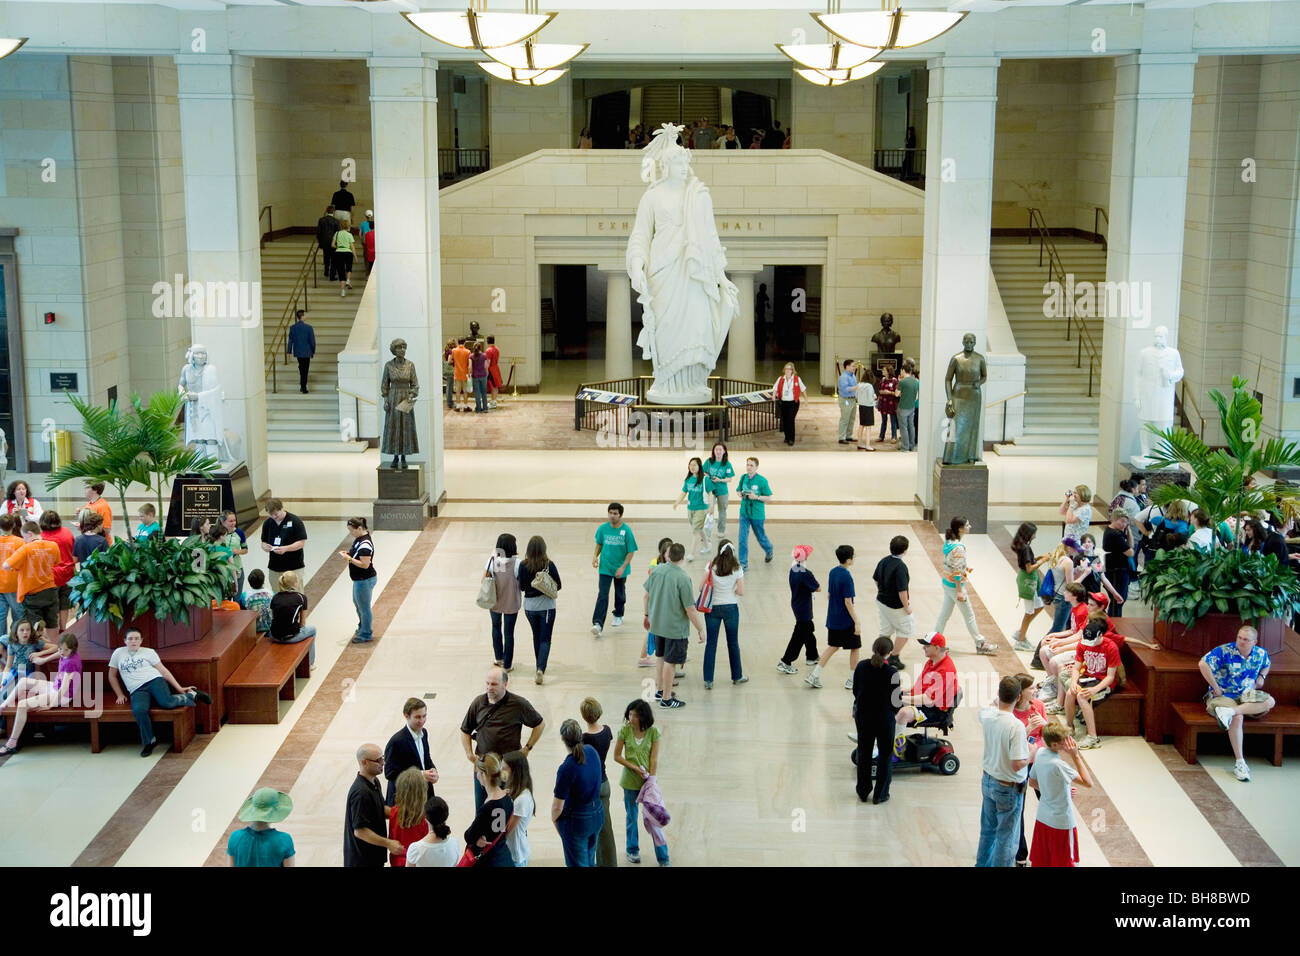 Vista in elevazione della parte interna degli Stati Uniti Capitol Visitor Center con la folla a piedi intorno alla Statua della Libertà, Washington D.C. Foto Stock